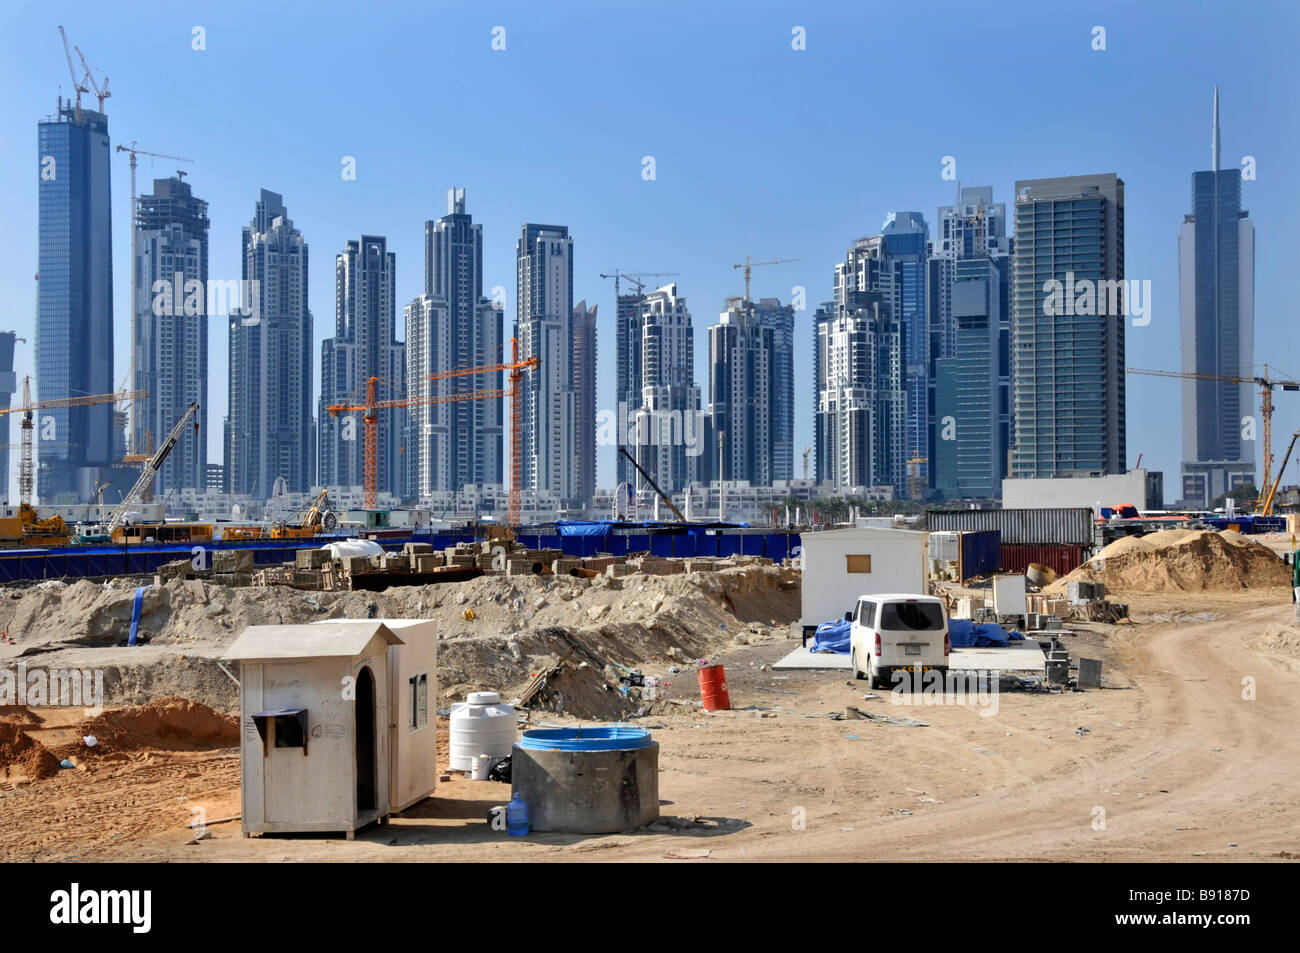 Dubai grand chantier de construction avec de nombreux gratte-ciel de haute élévation certains effectué certains travaux en cours avec des grues à Dubaï ÉMIRATS ARABES UNIS Moyen-Orient Asie Banque D'Images